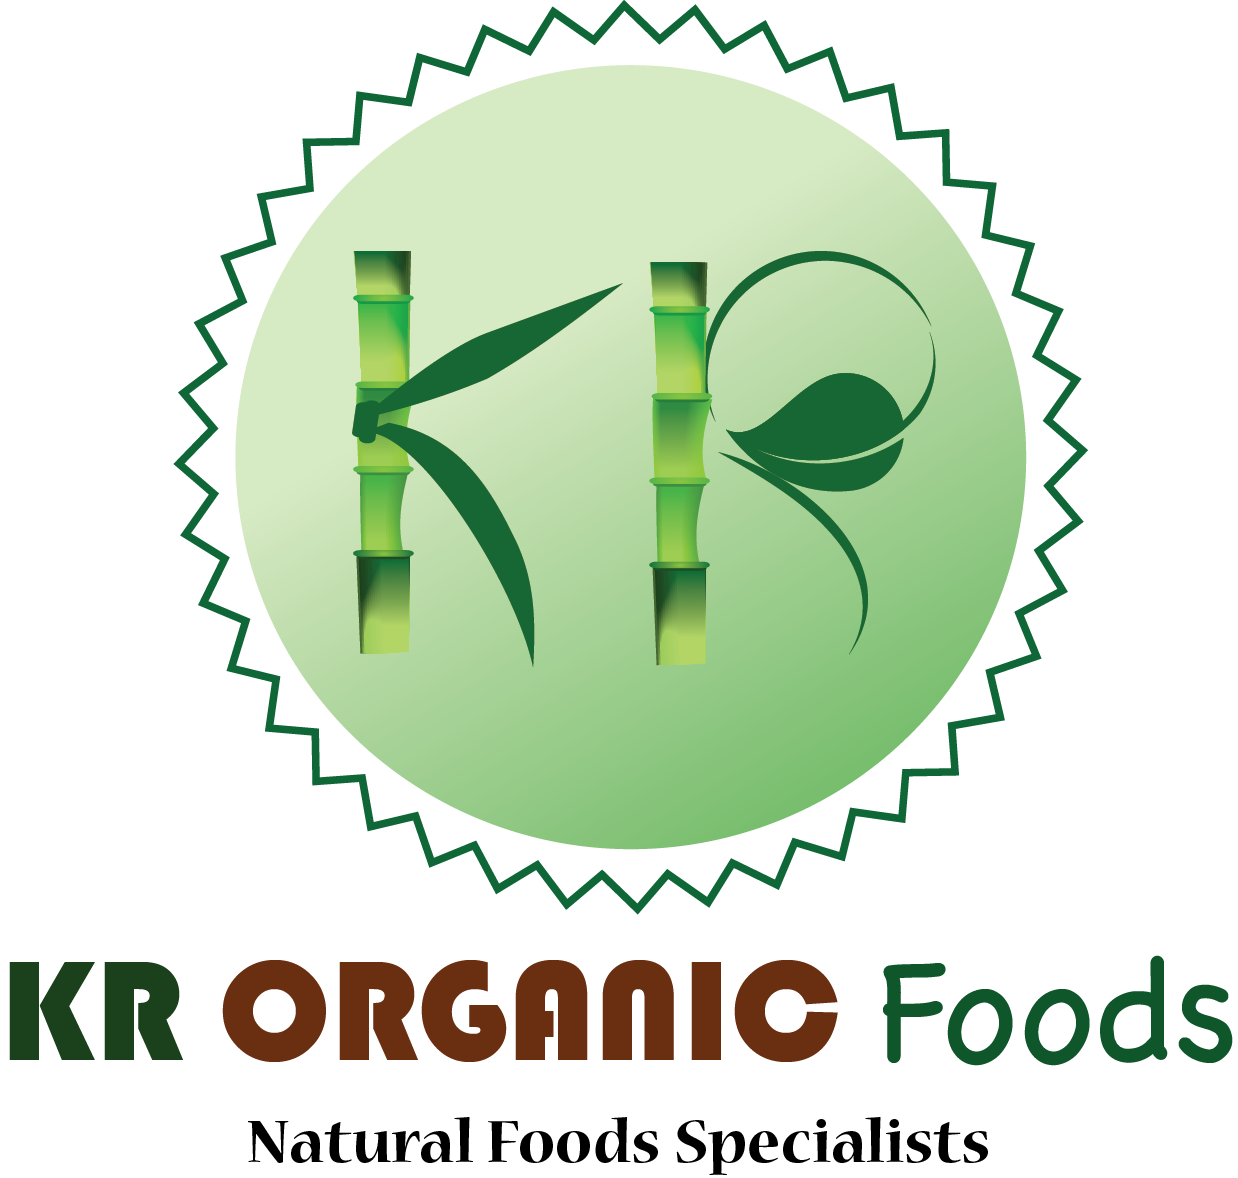 kr-logo